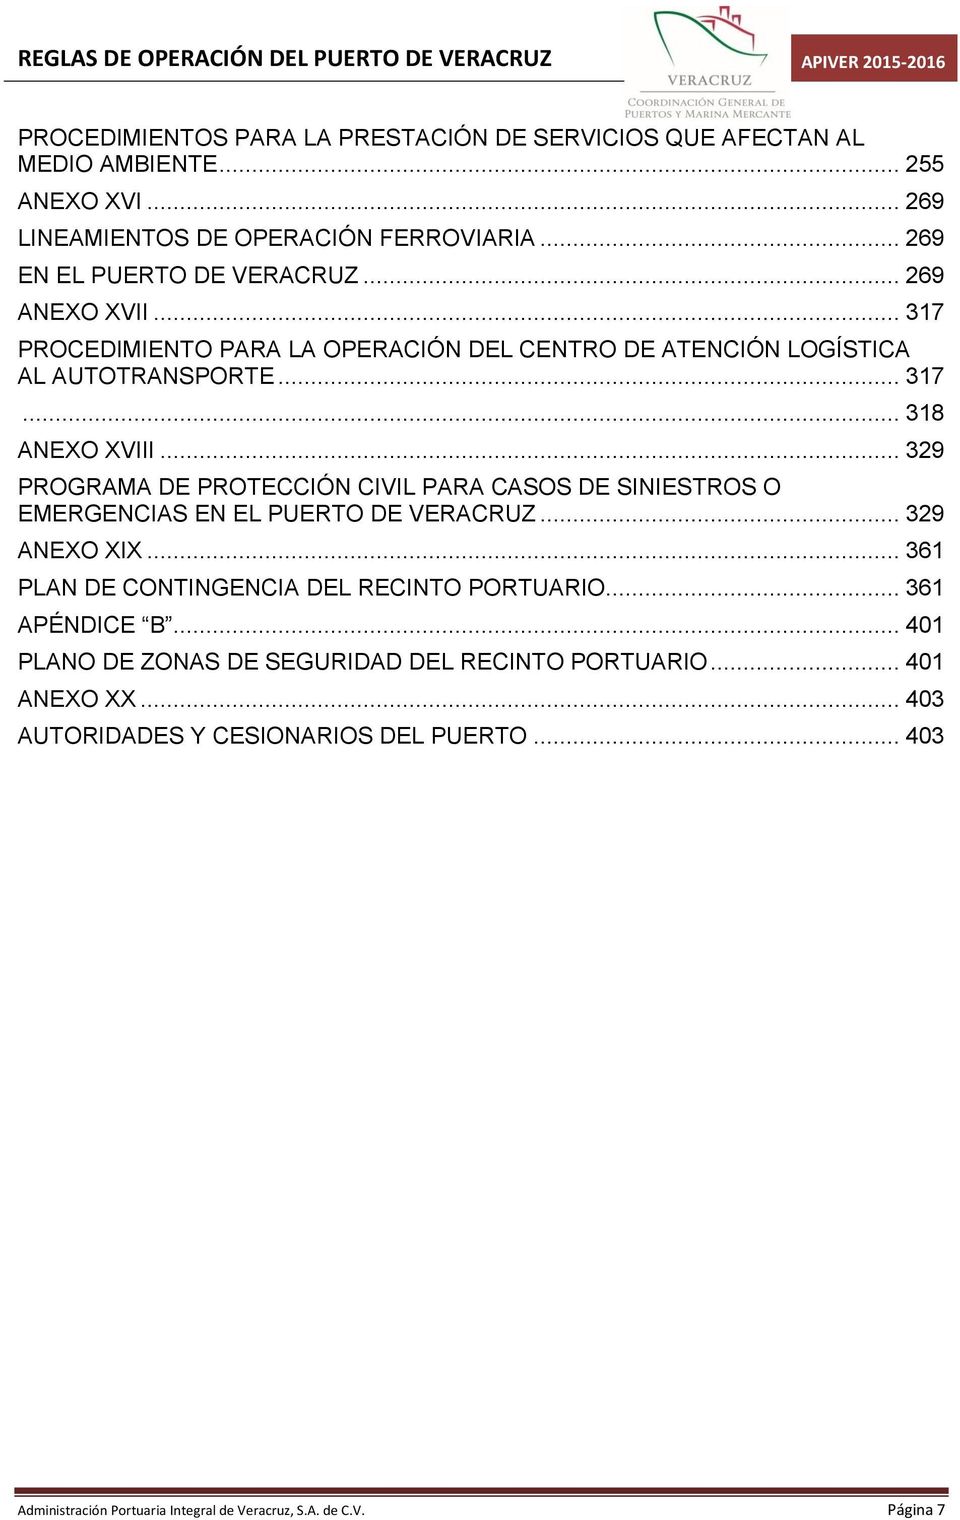 .. 329 PROGRAMA DE PROTECCIÓN CIVIL PARA CASOS DE SINIESTROS O EMERGENCIAS EN EL PUERTO DE VERACRUZ... 329 ANEXO XIX... 361 PLAN DE CONTINGENCIA DEL RECINTO PORTUARIO.